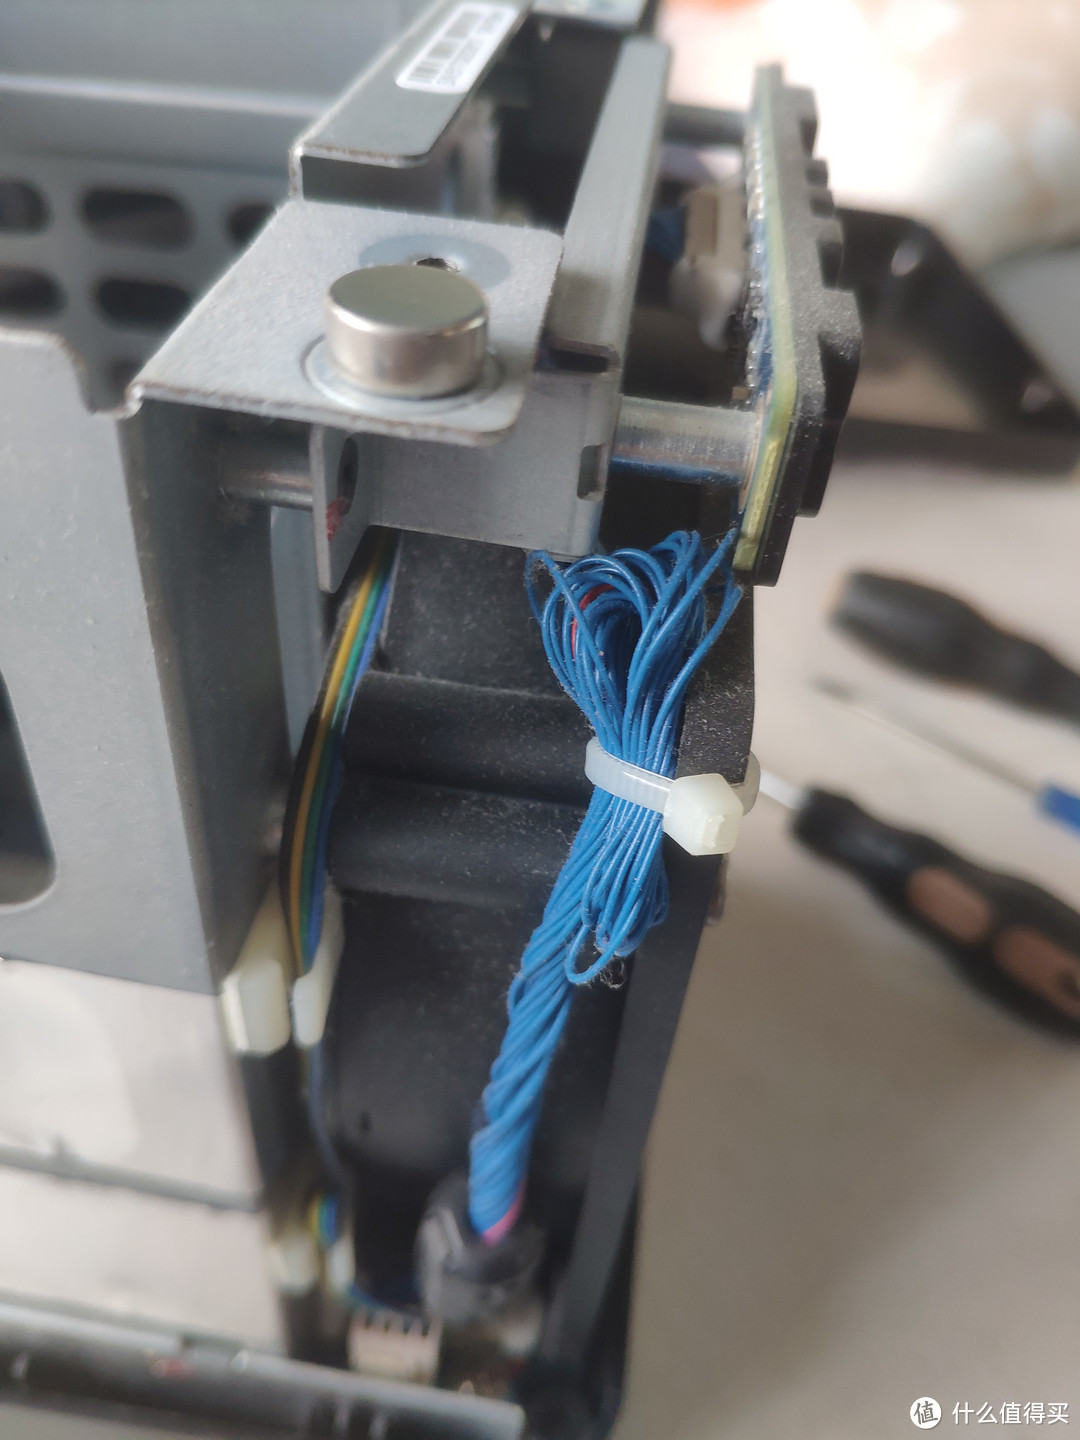 这条蓝色线缆是面板指示灯连接线 威联通真牛逼 居然用线缆连接 完全可以定制条排线连接啊 